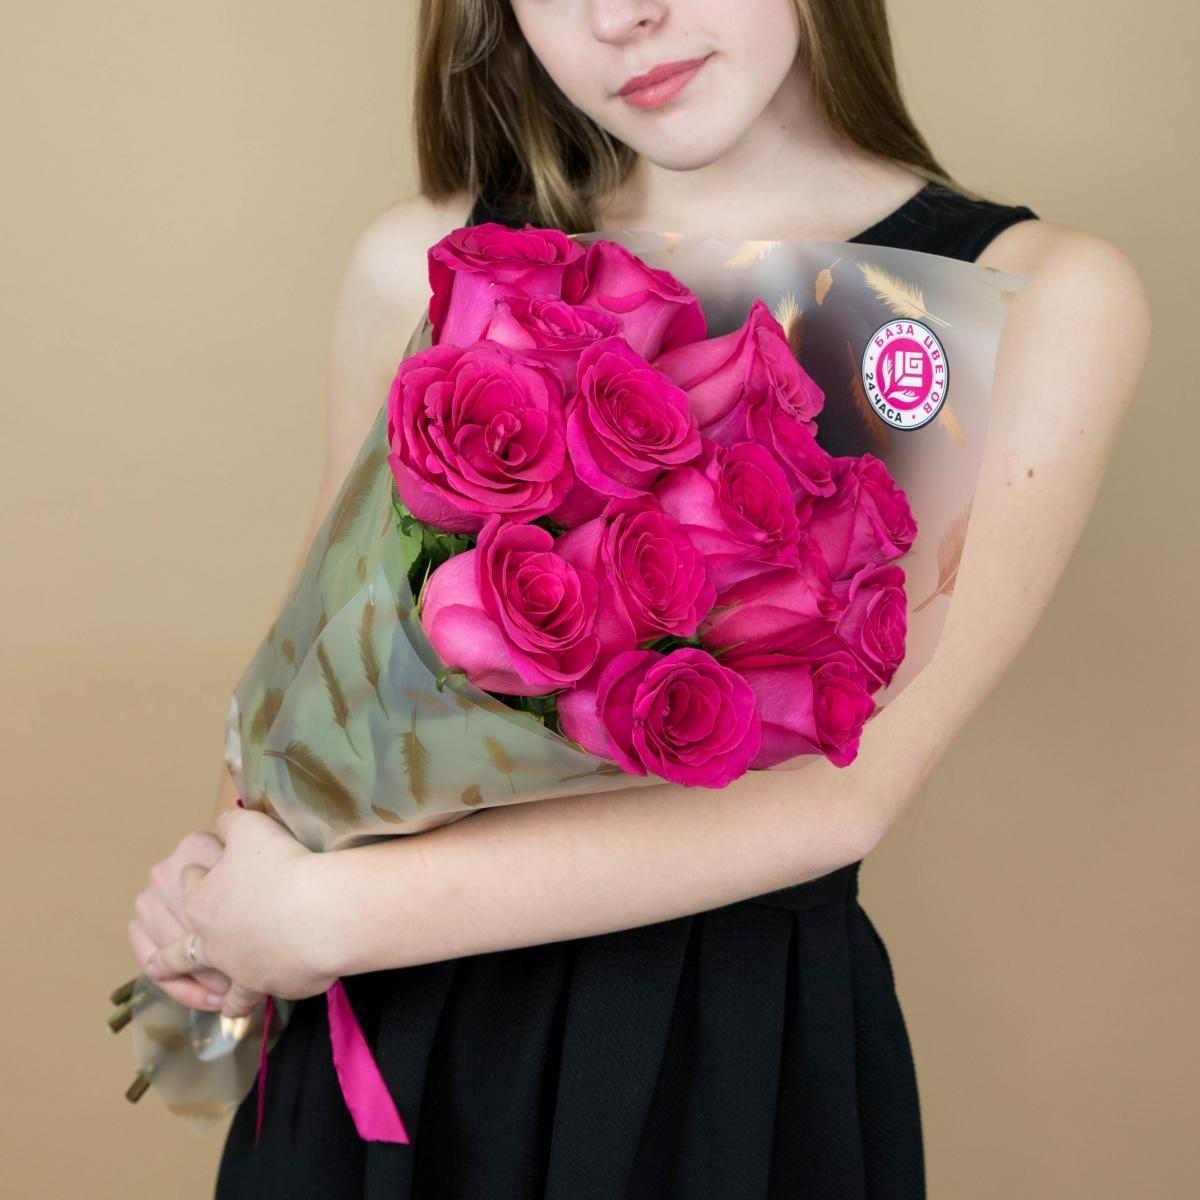 Букет из розовых роз 15 шт 40 см (Эквадор) Артикул  82008